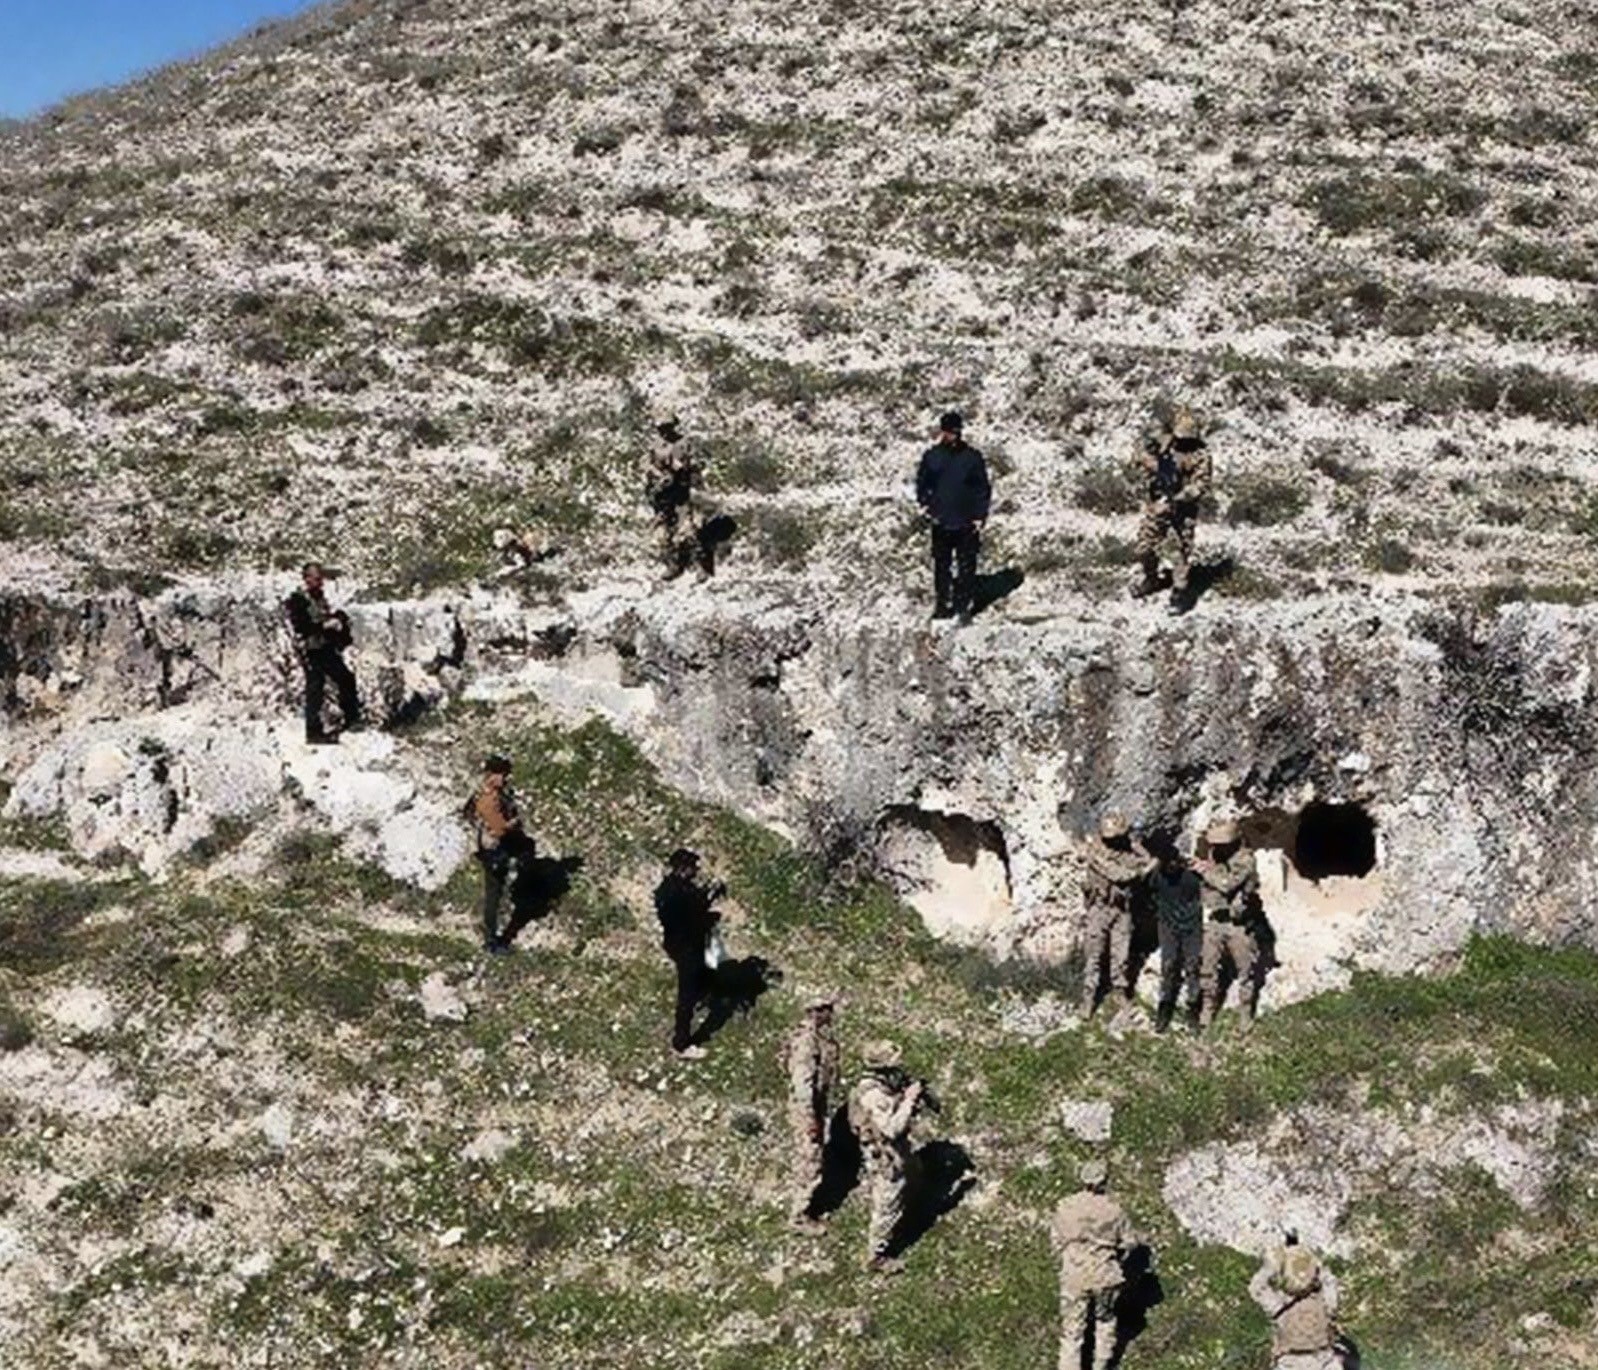 Adıyaman’da 3 kişiyi öldüren şahıs mağarada yakalandı
